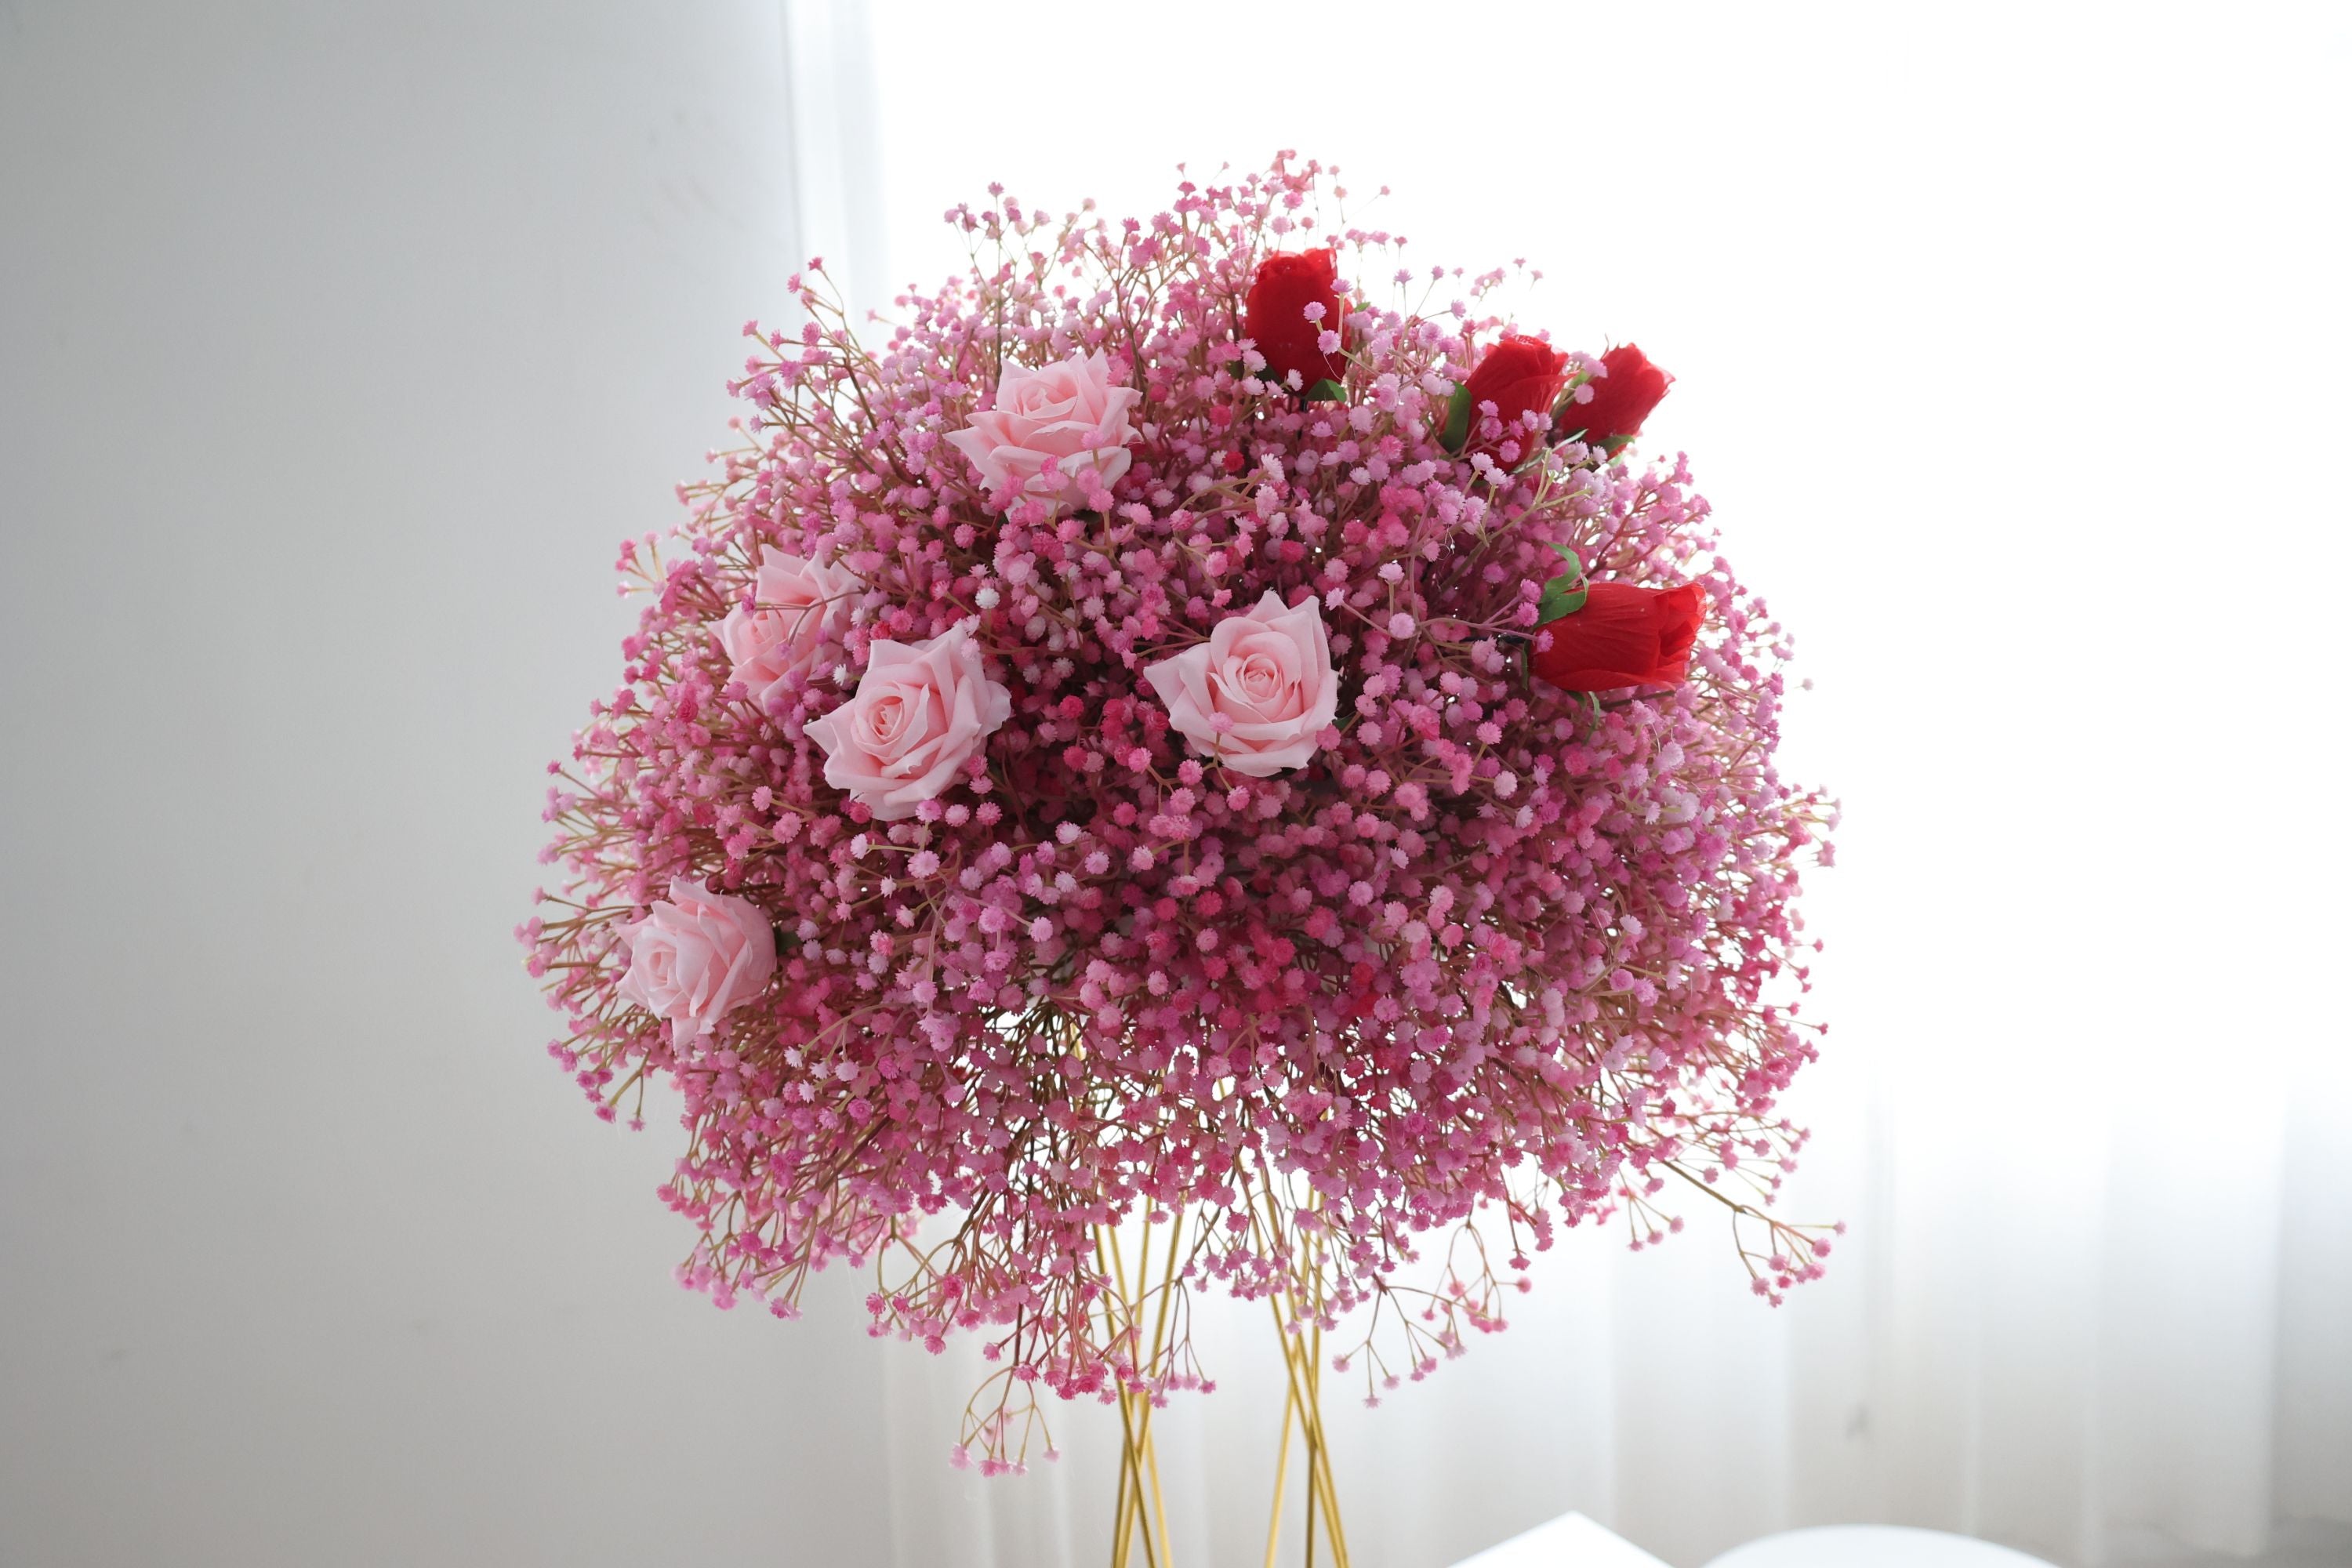 احمرار الوئام-زهور وردية رشيقة تقع على سحابة من نفس الطفل الوردي